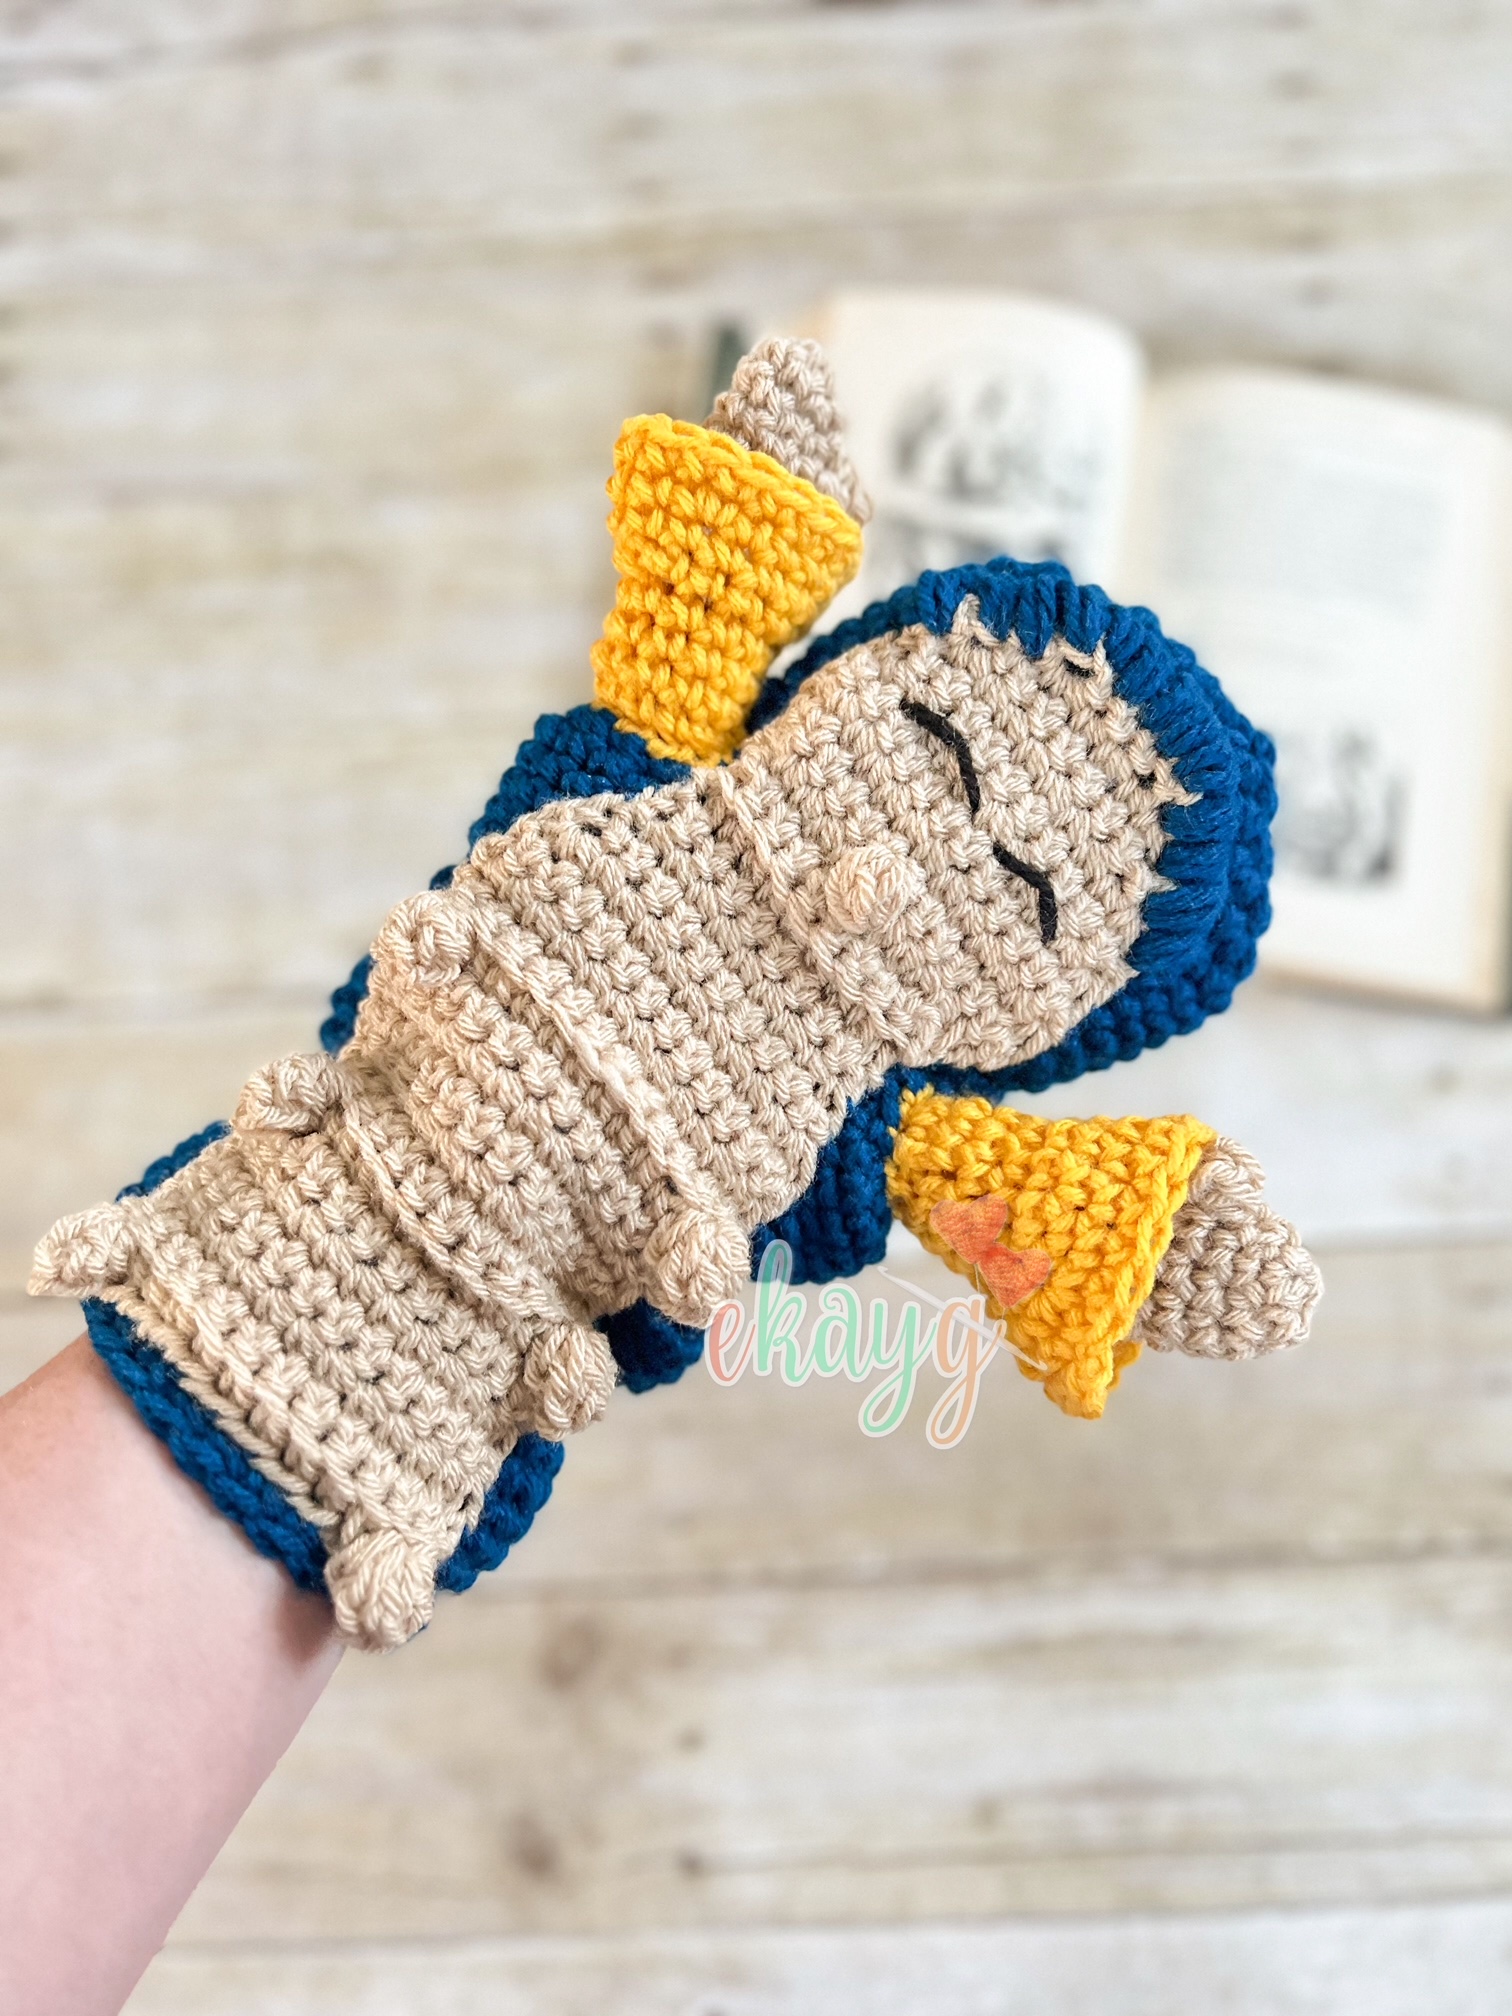 Captain Hook Hand Puppet - ekayg crafts